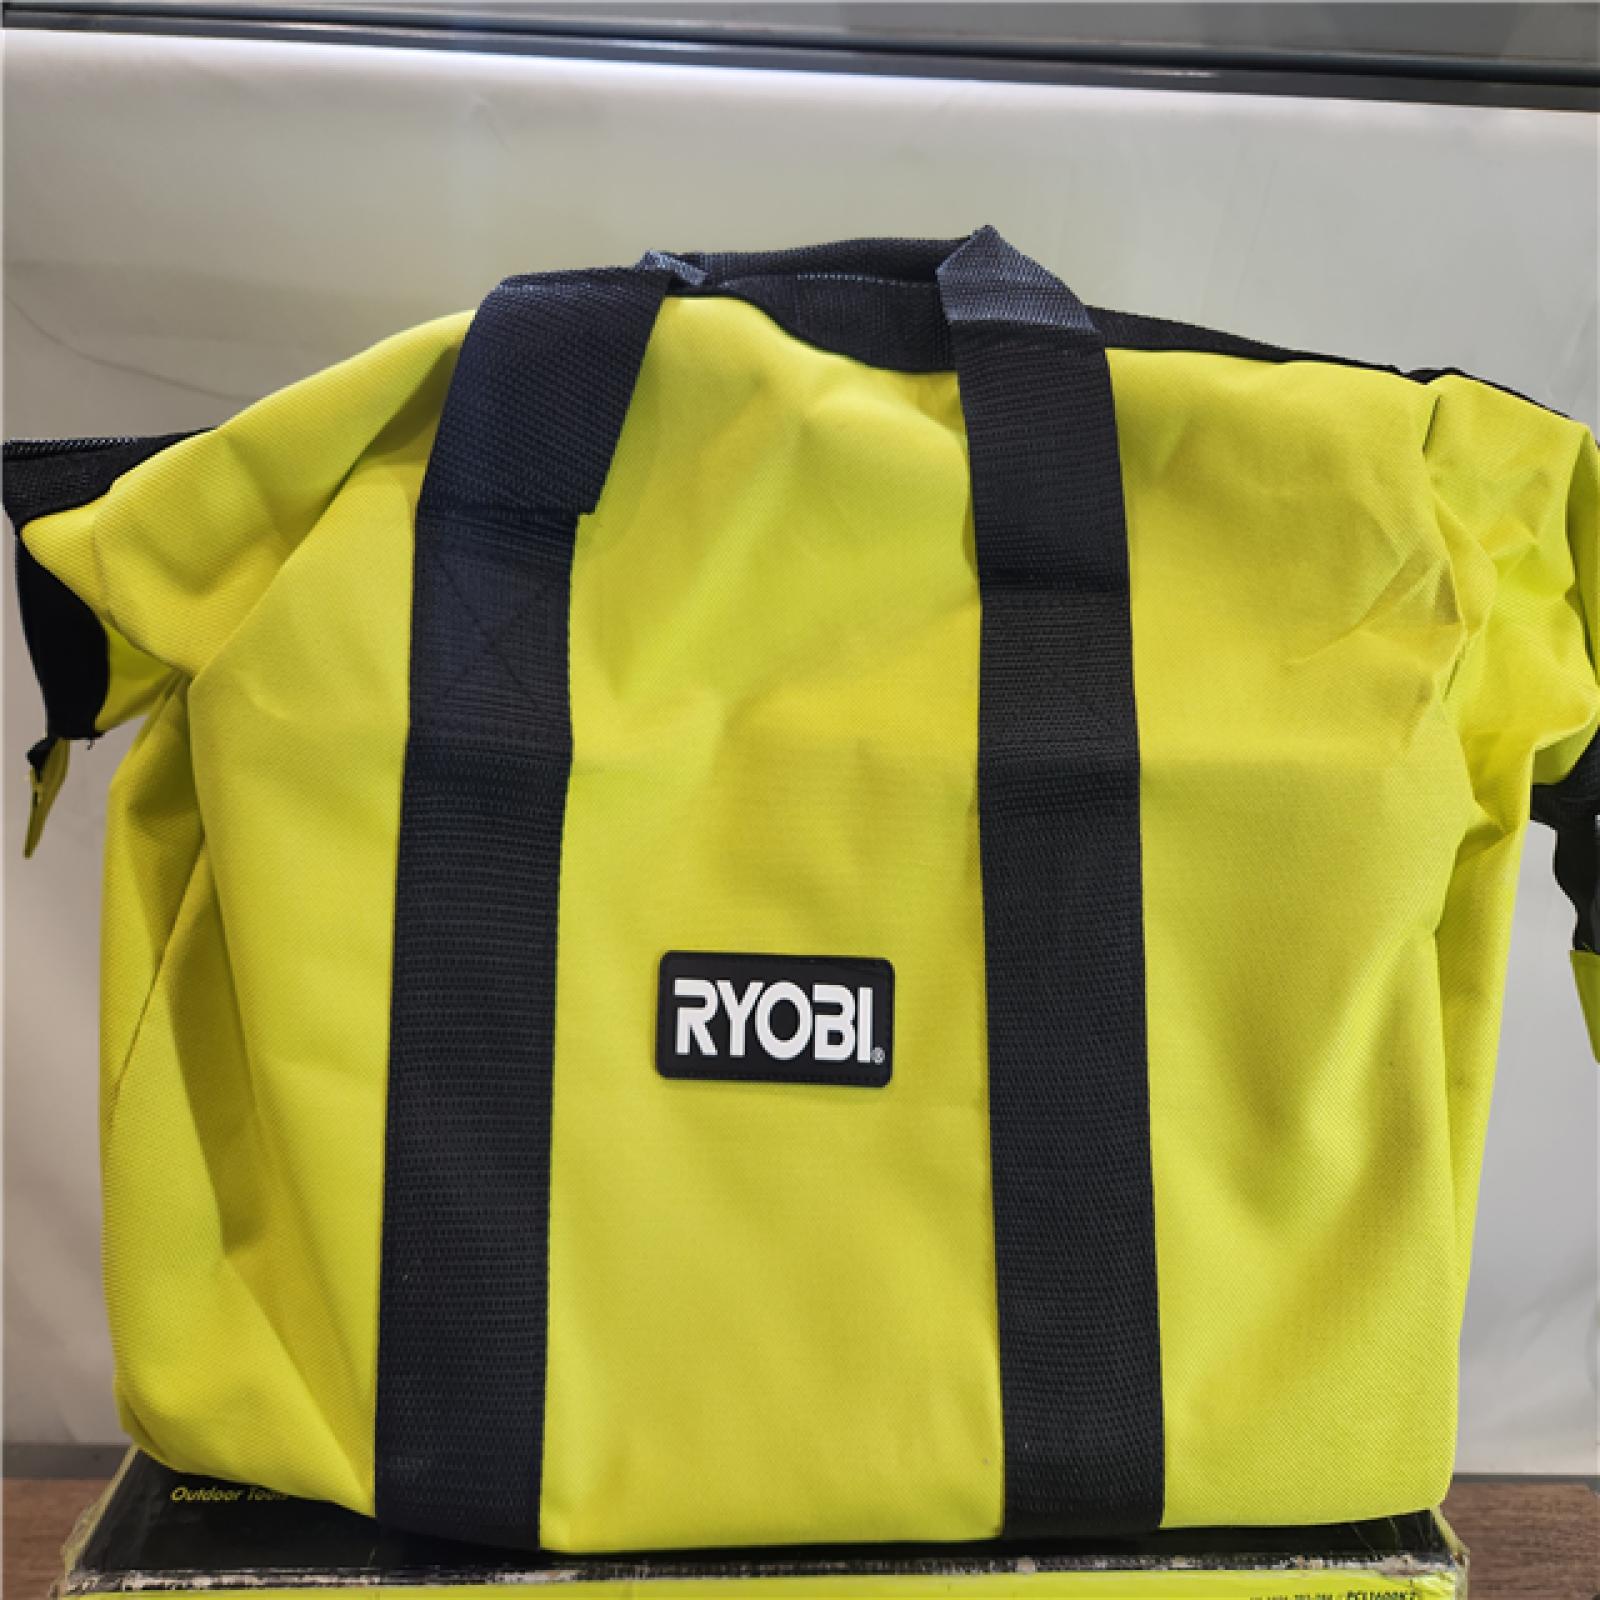 RYOBI ONE+ 18V Cordless 6-Tool Combo Kit with 1.5 Ah Battery, 4.0